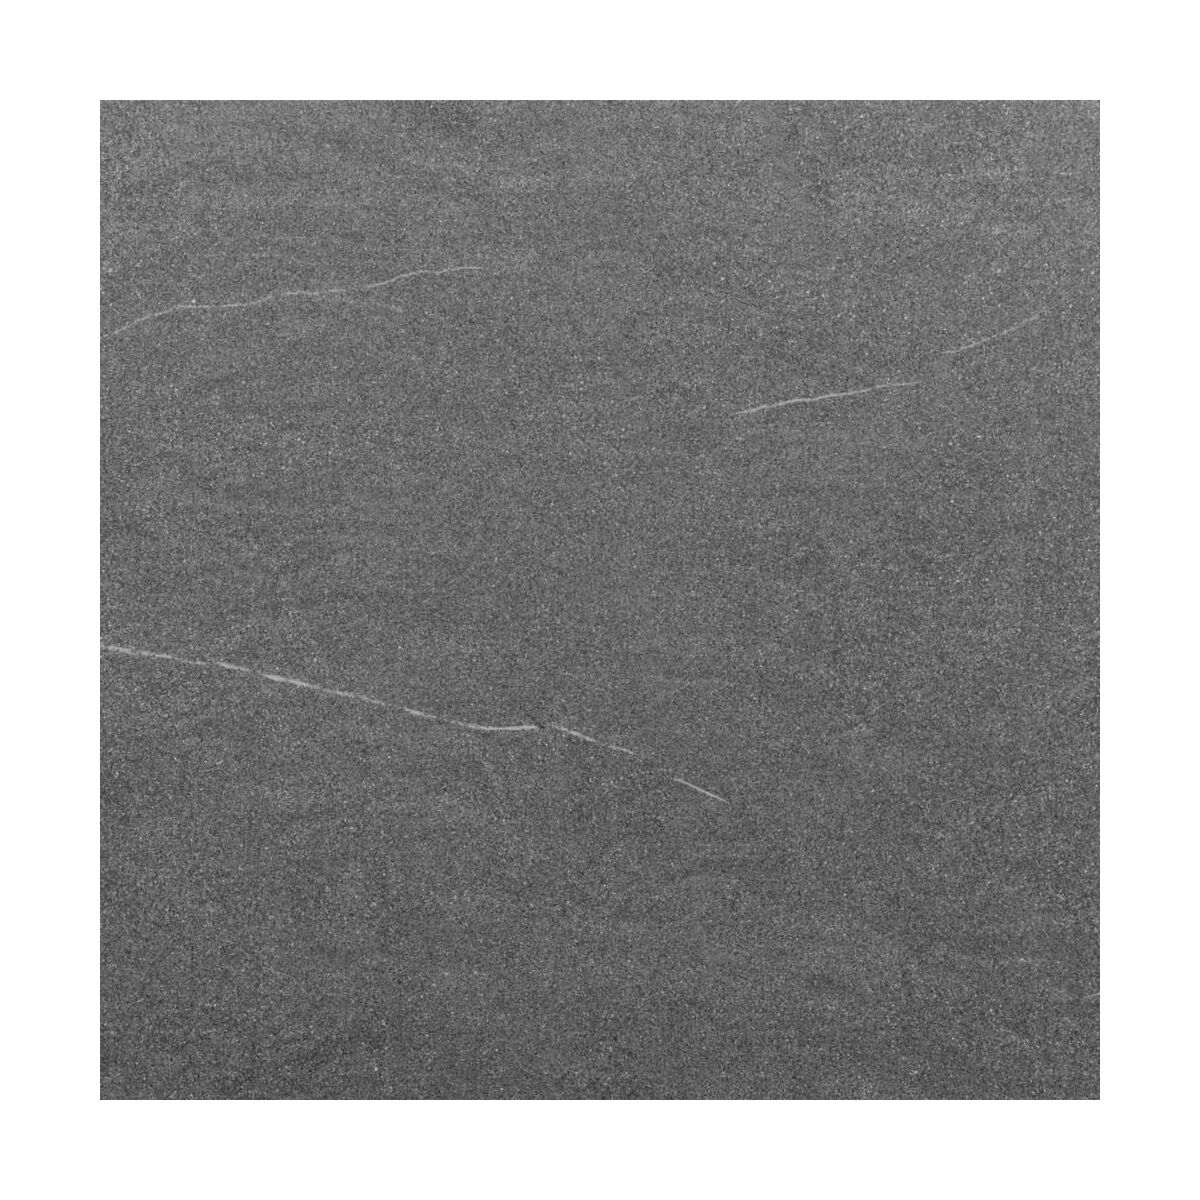 Blat kuchenny laminowany sandstone grey S62030 Pfleiderer